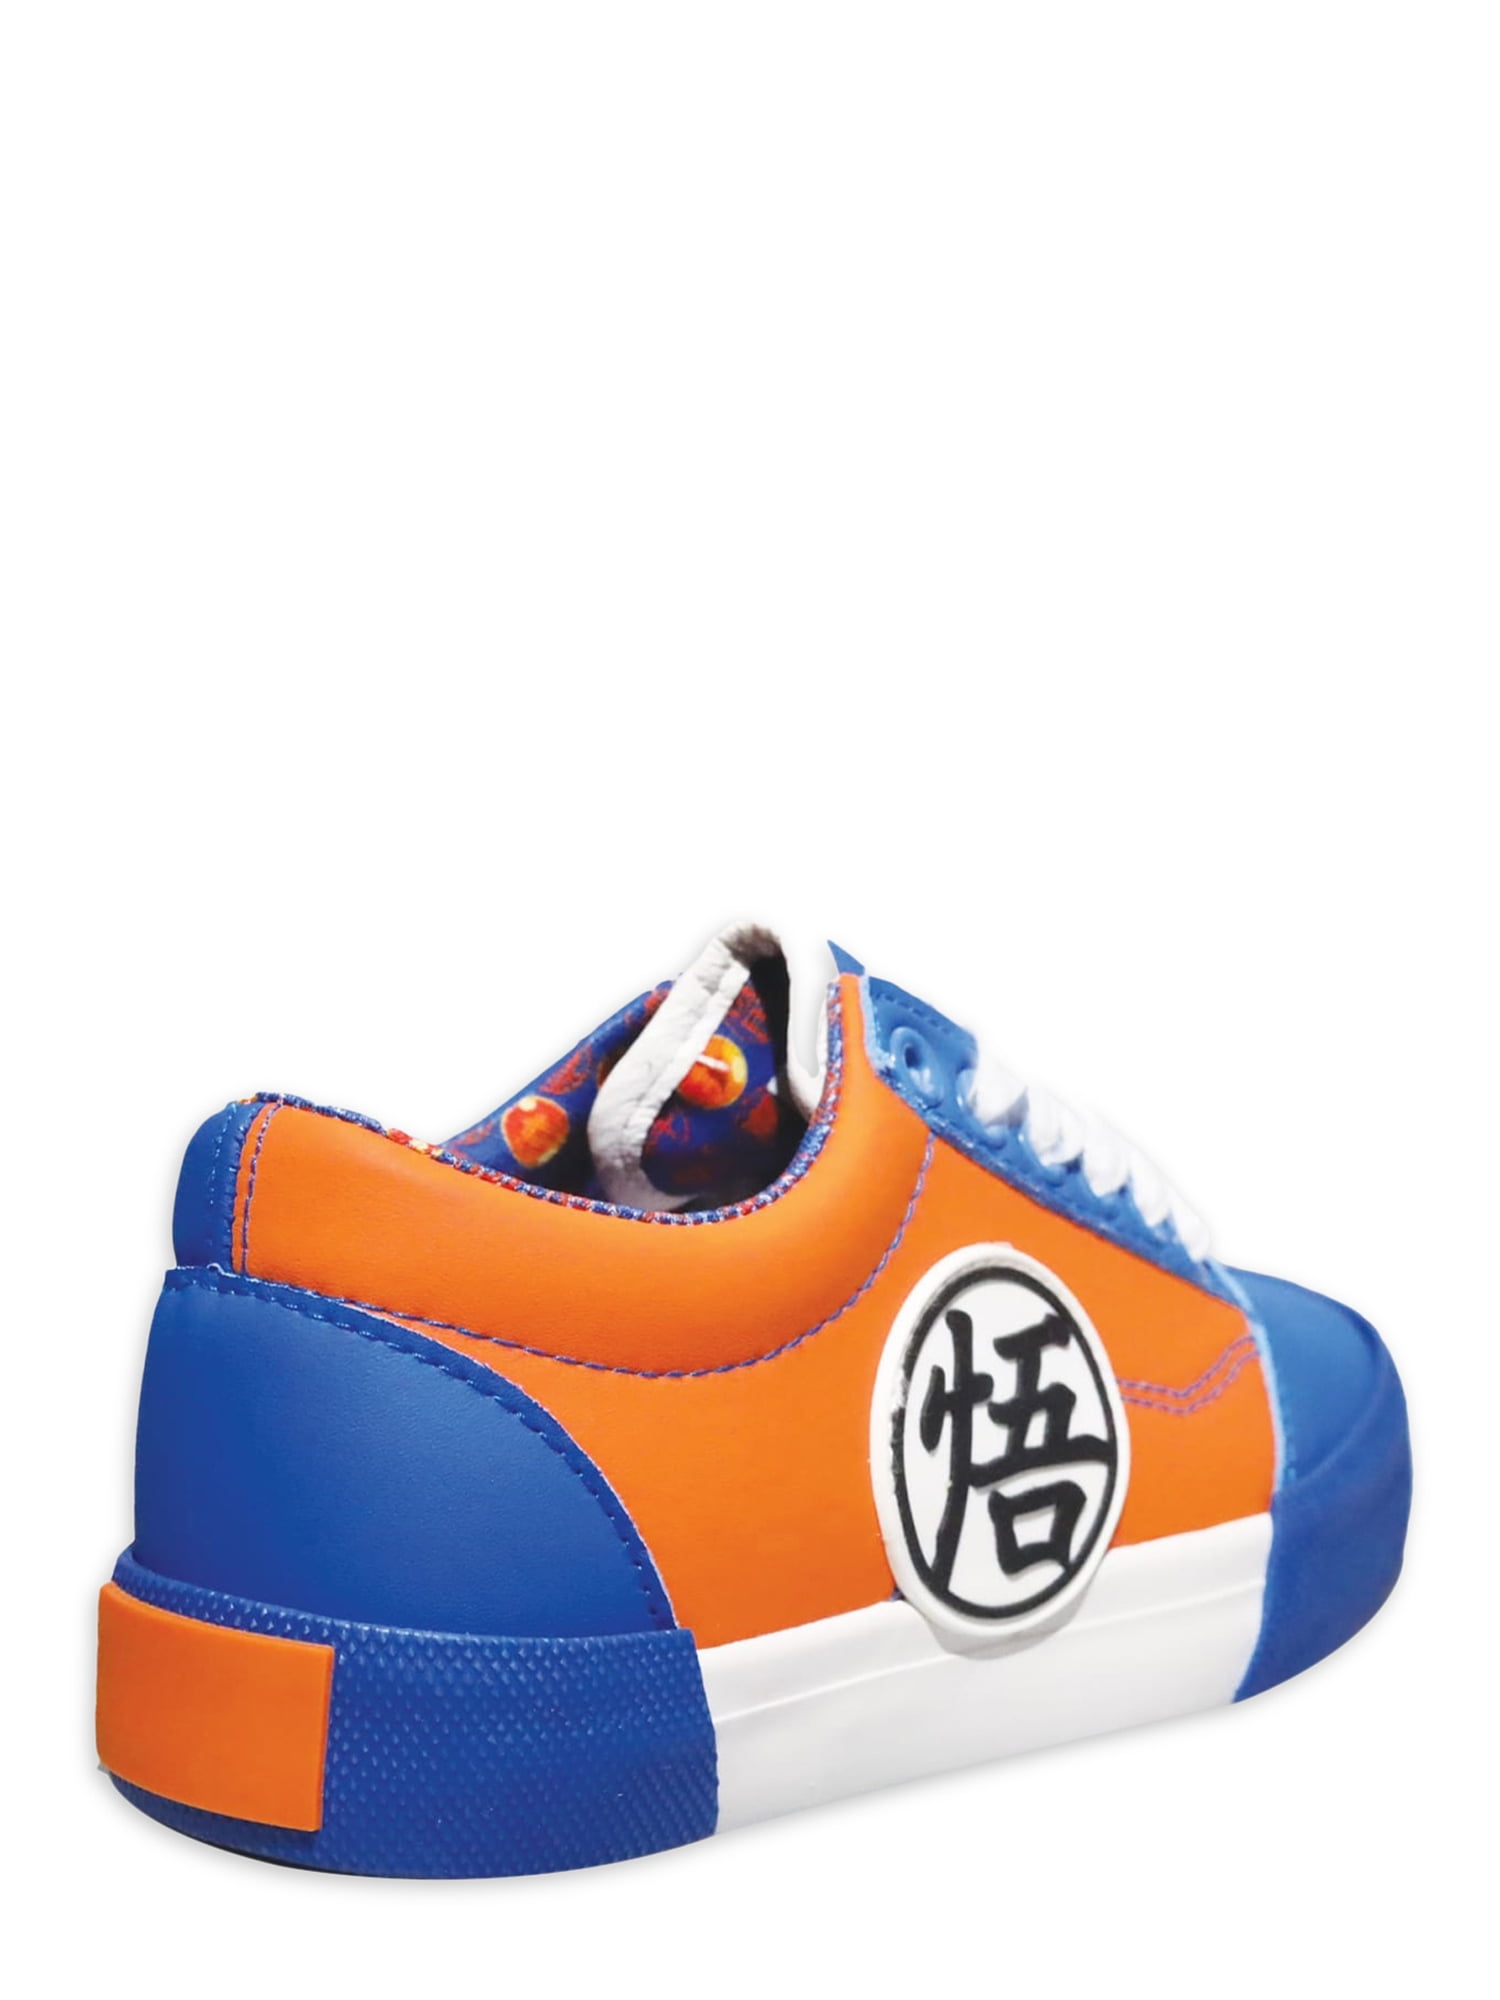 Anta x Dragon Super Goku Black Men's Culture Sneakers